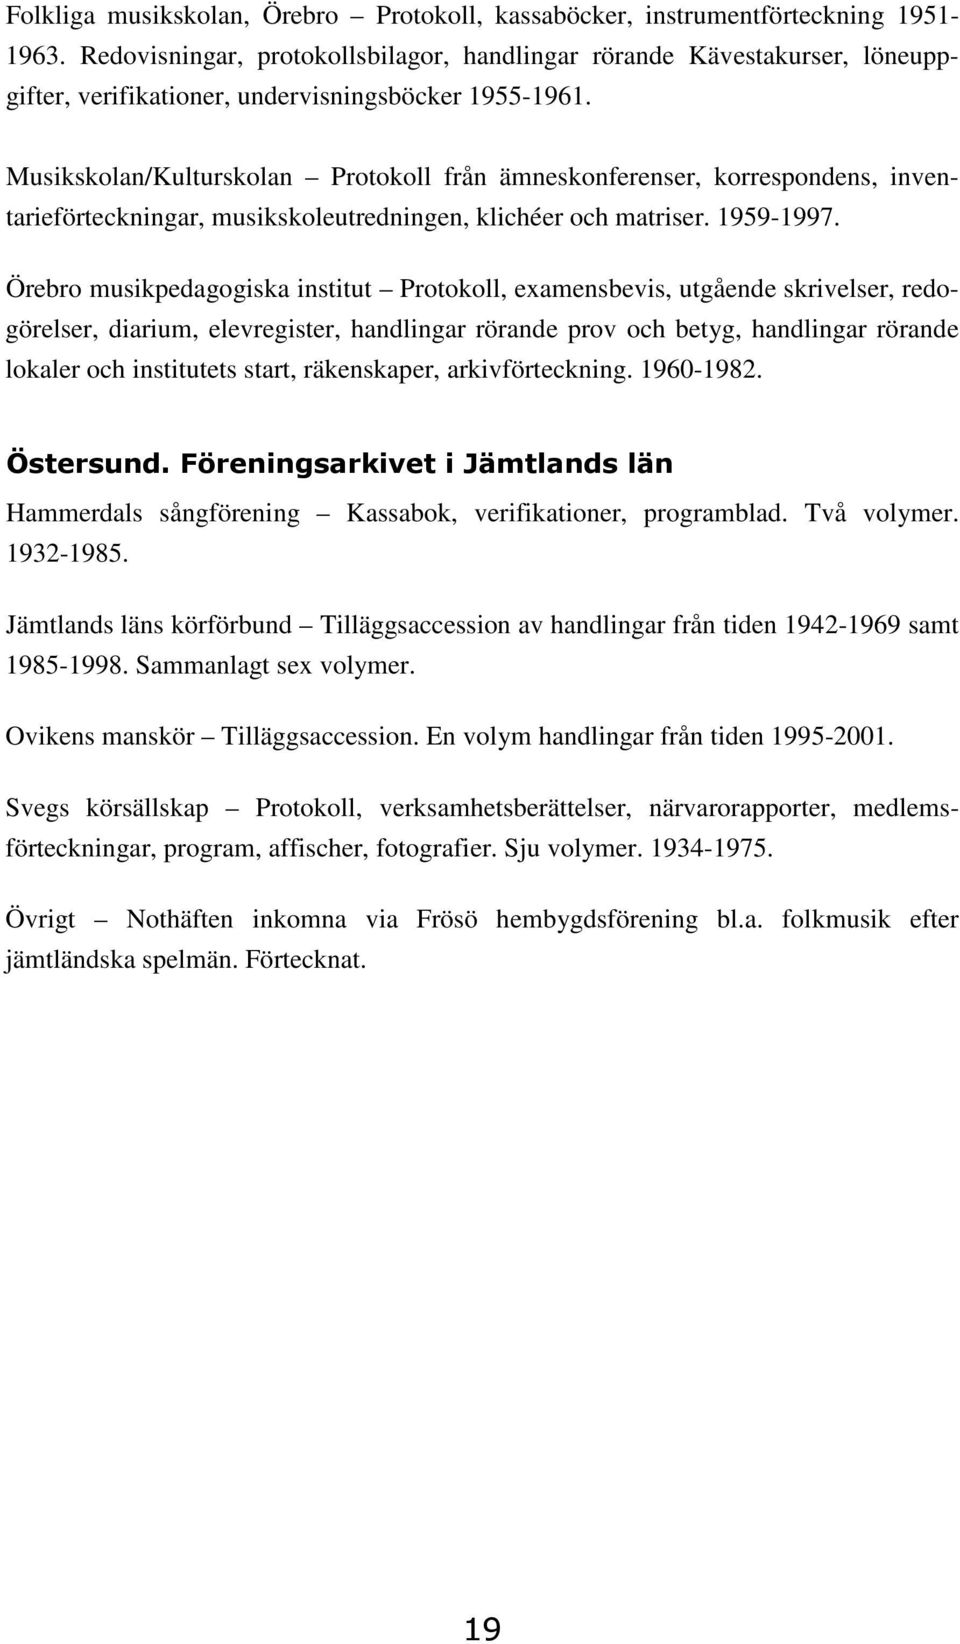 Musikskolan/Kulturskolan Protokoll från ämneskonferenser, korrespondens, inventarieförteckningar, musikskoleutredningen, klichéer och matriser. 1959-1997.